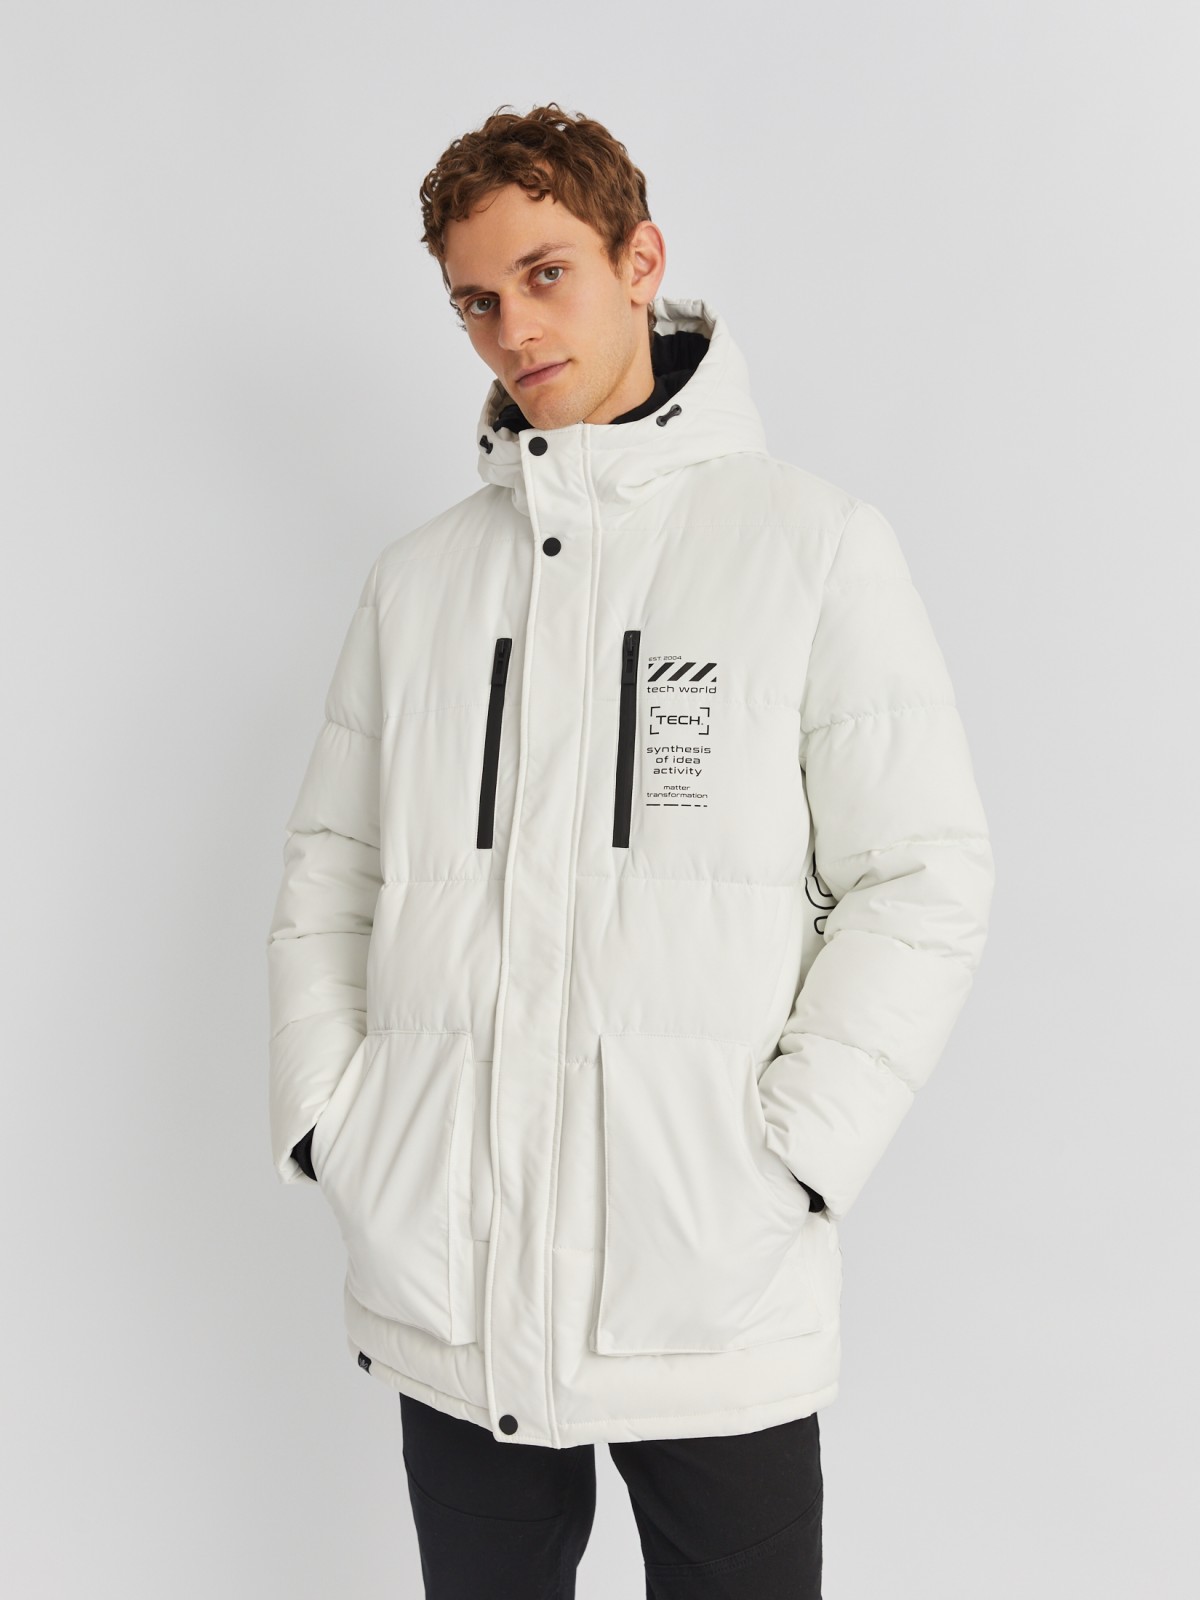 Тёплая удлинённая куртка с капюшоном и внутренними манжетами zolla 013425202074, цвет белый, размер S - фото 3